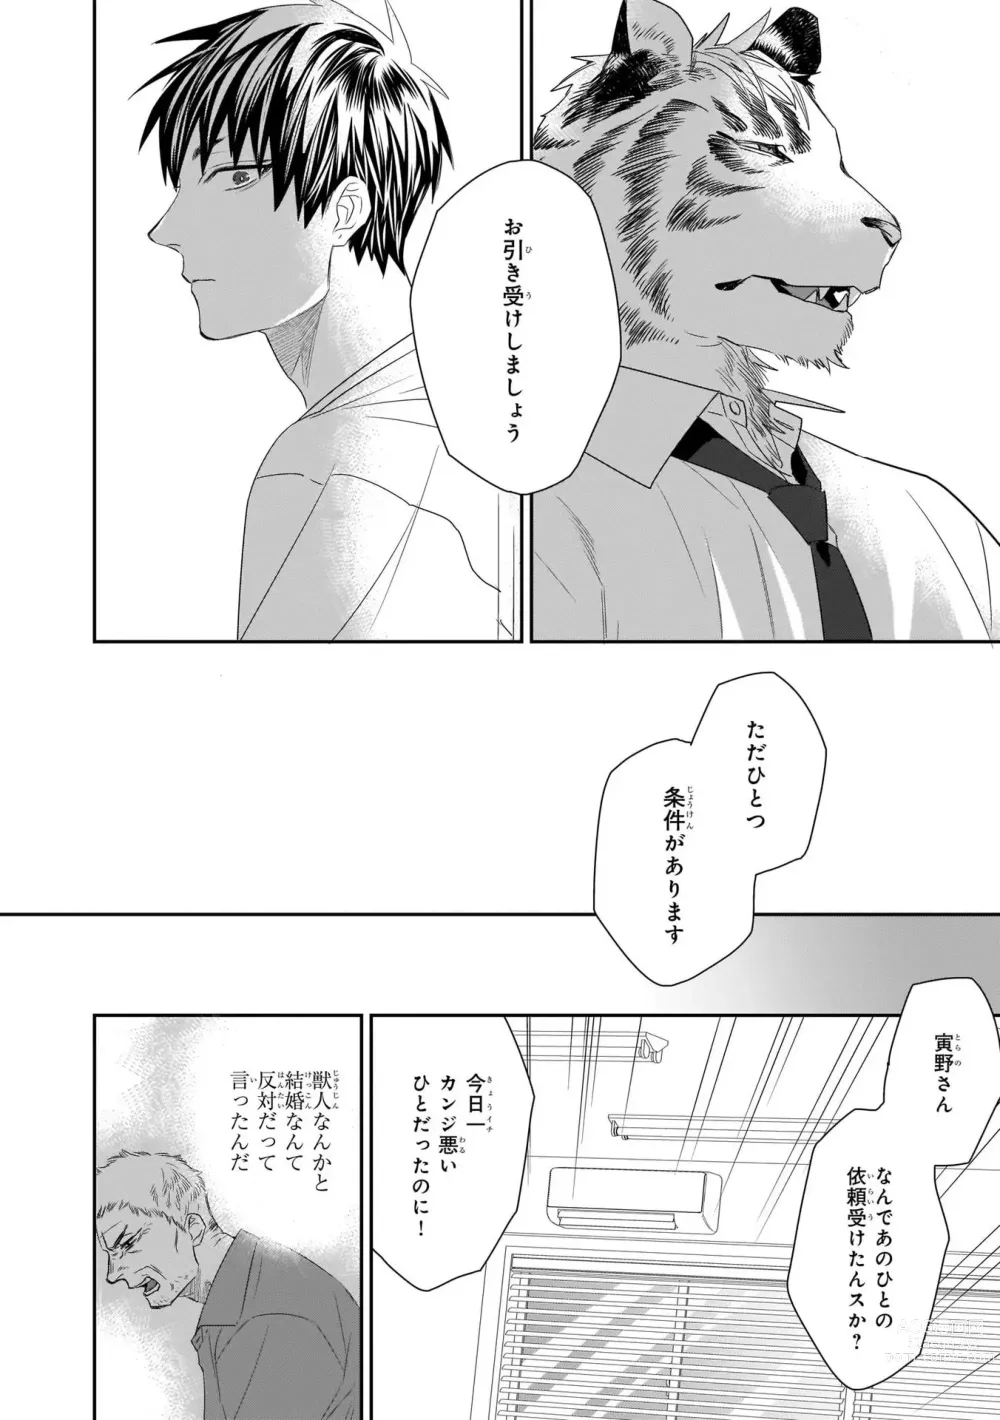 Page 30 of manga Torano Tantei Jimusho e Youkoso 1-5